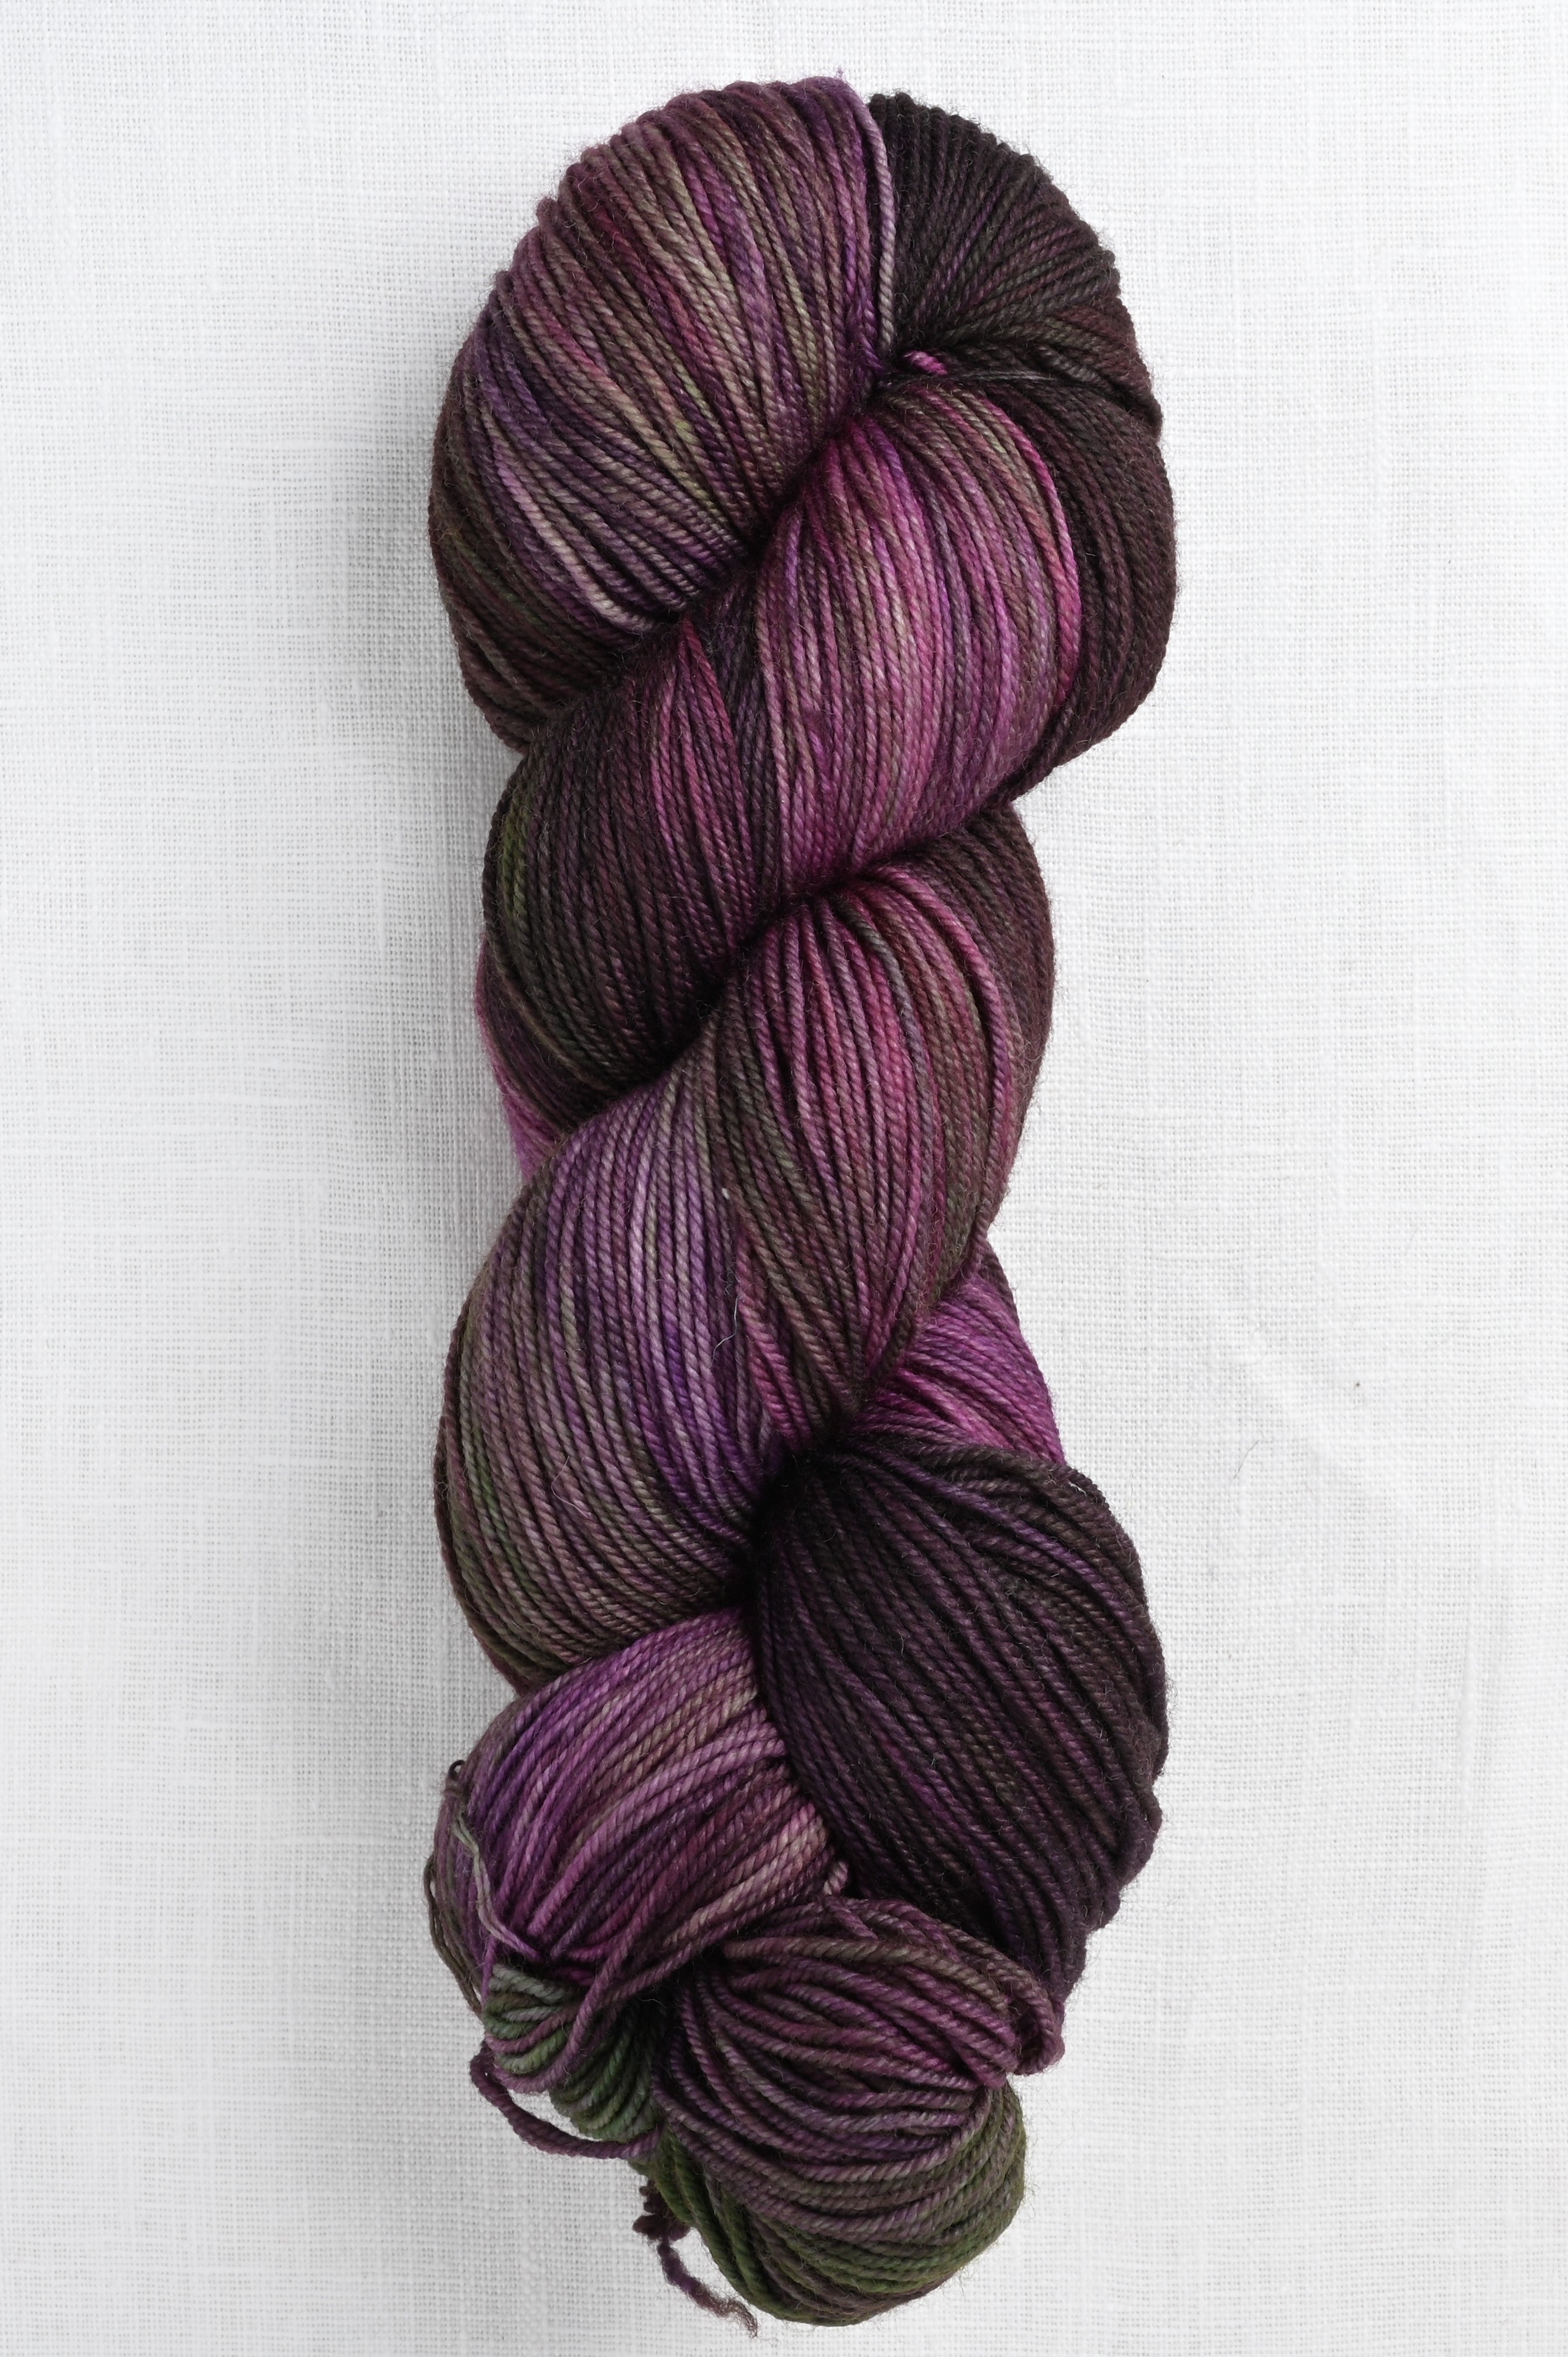 Malabrigo - Sock #195 Black — Fiber Yarns